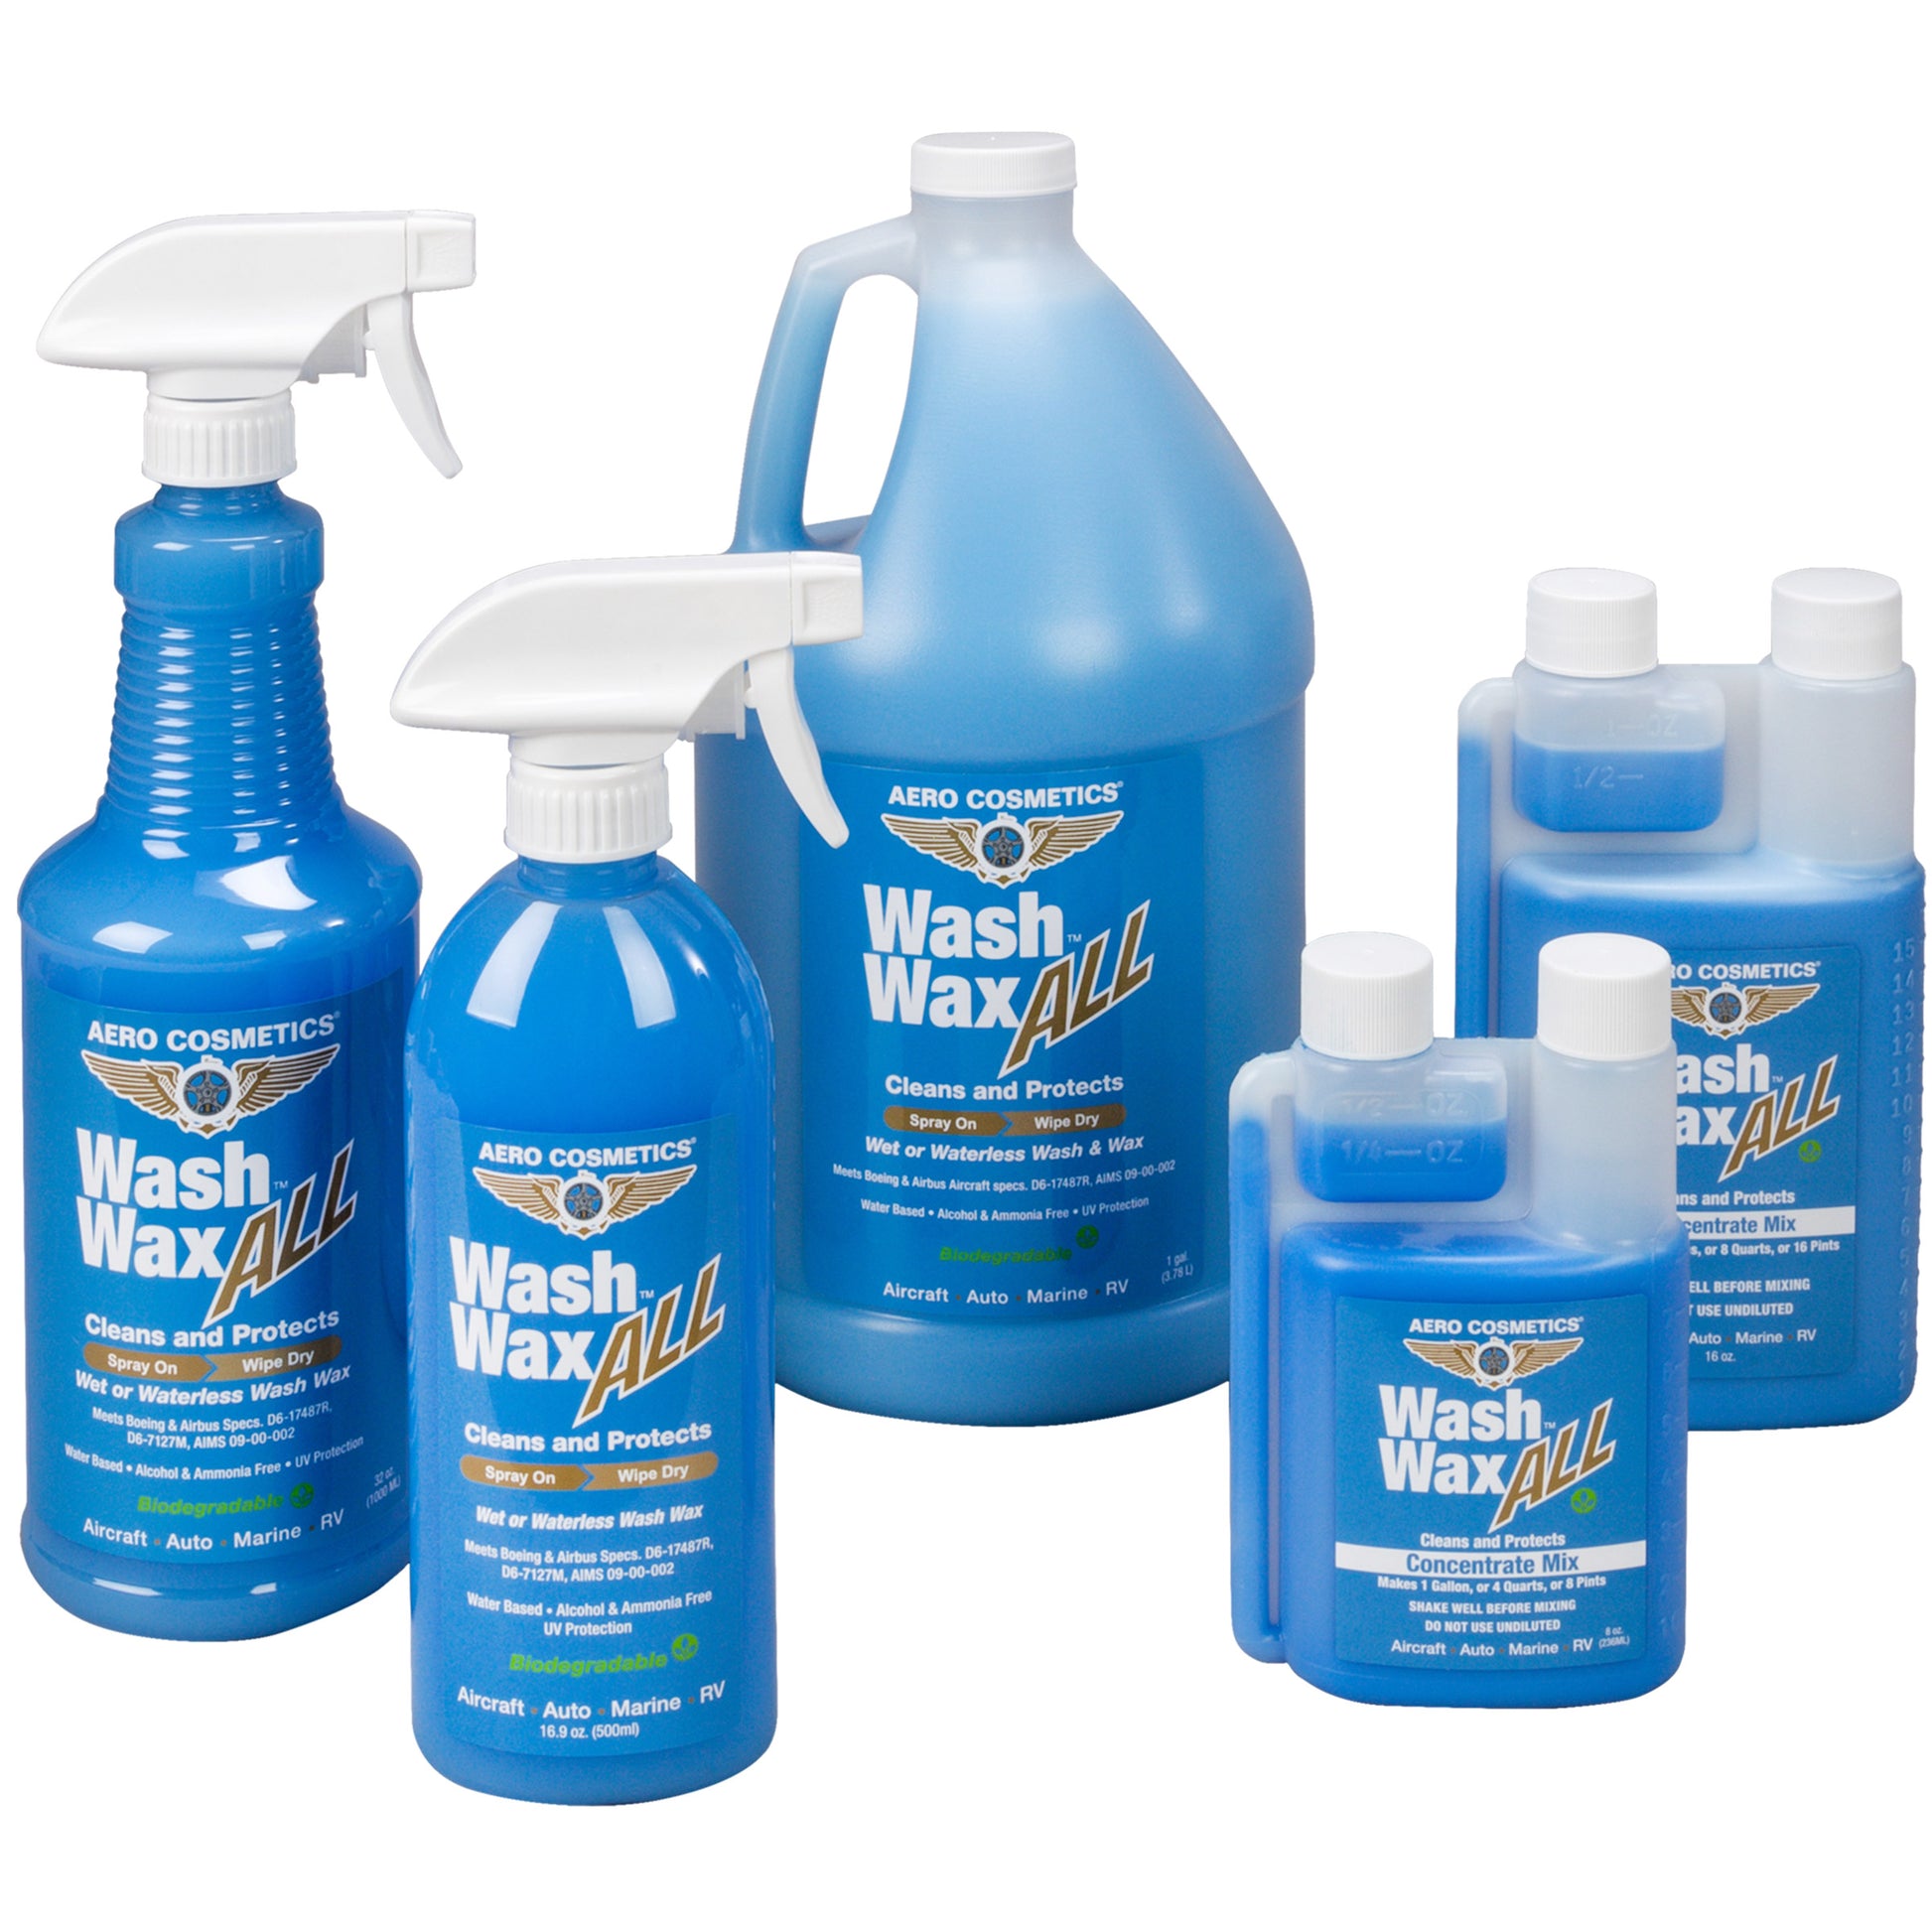 Wash Wax ALL - Waterless Car Wash Products